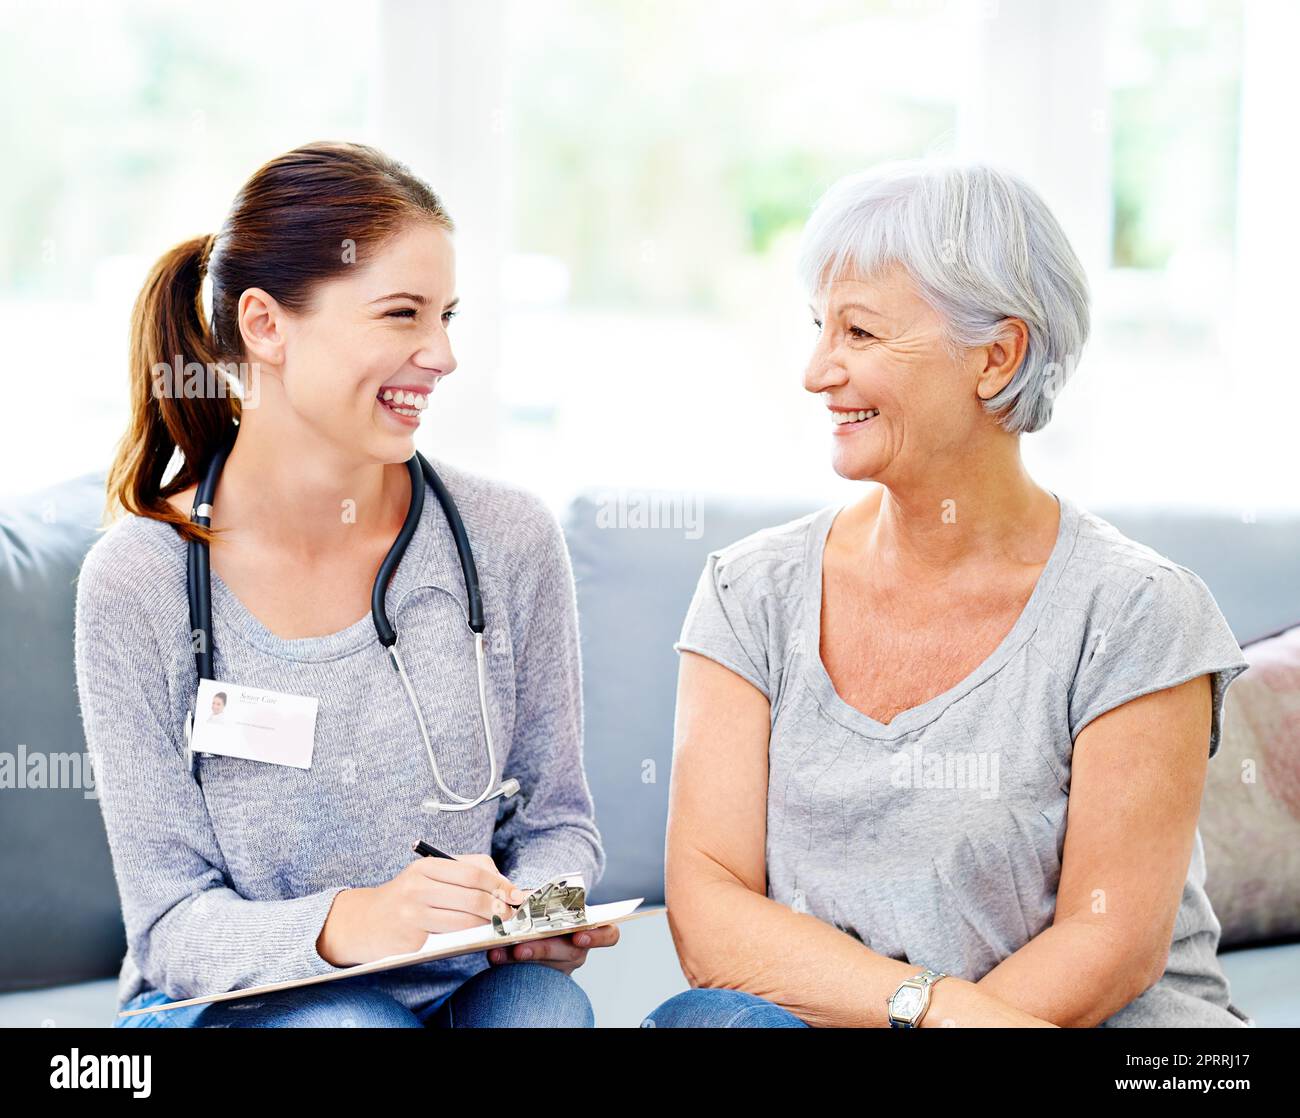 Estás en buena salud. Un médico le explica los resultados positivos de la prueba a un paciente senior sonriente. Foto de stock